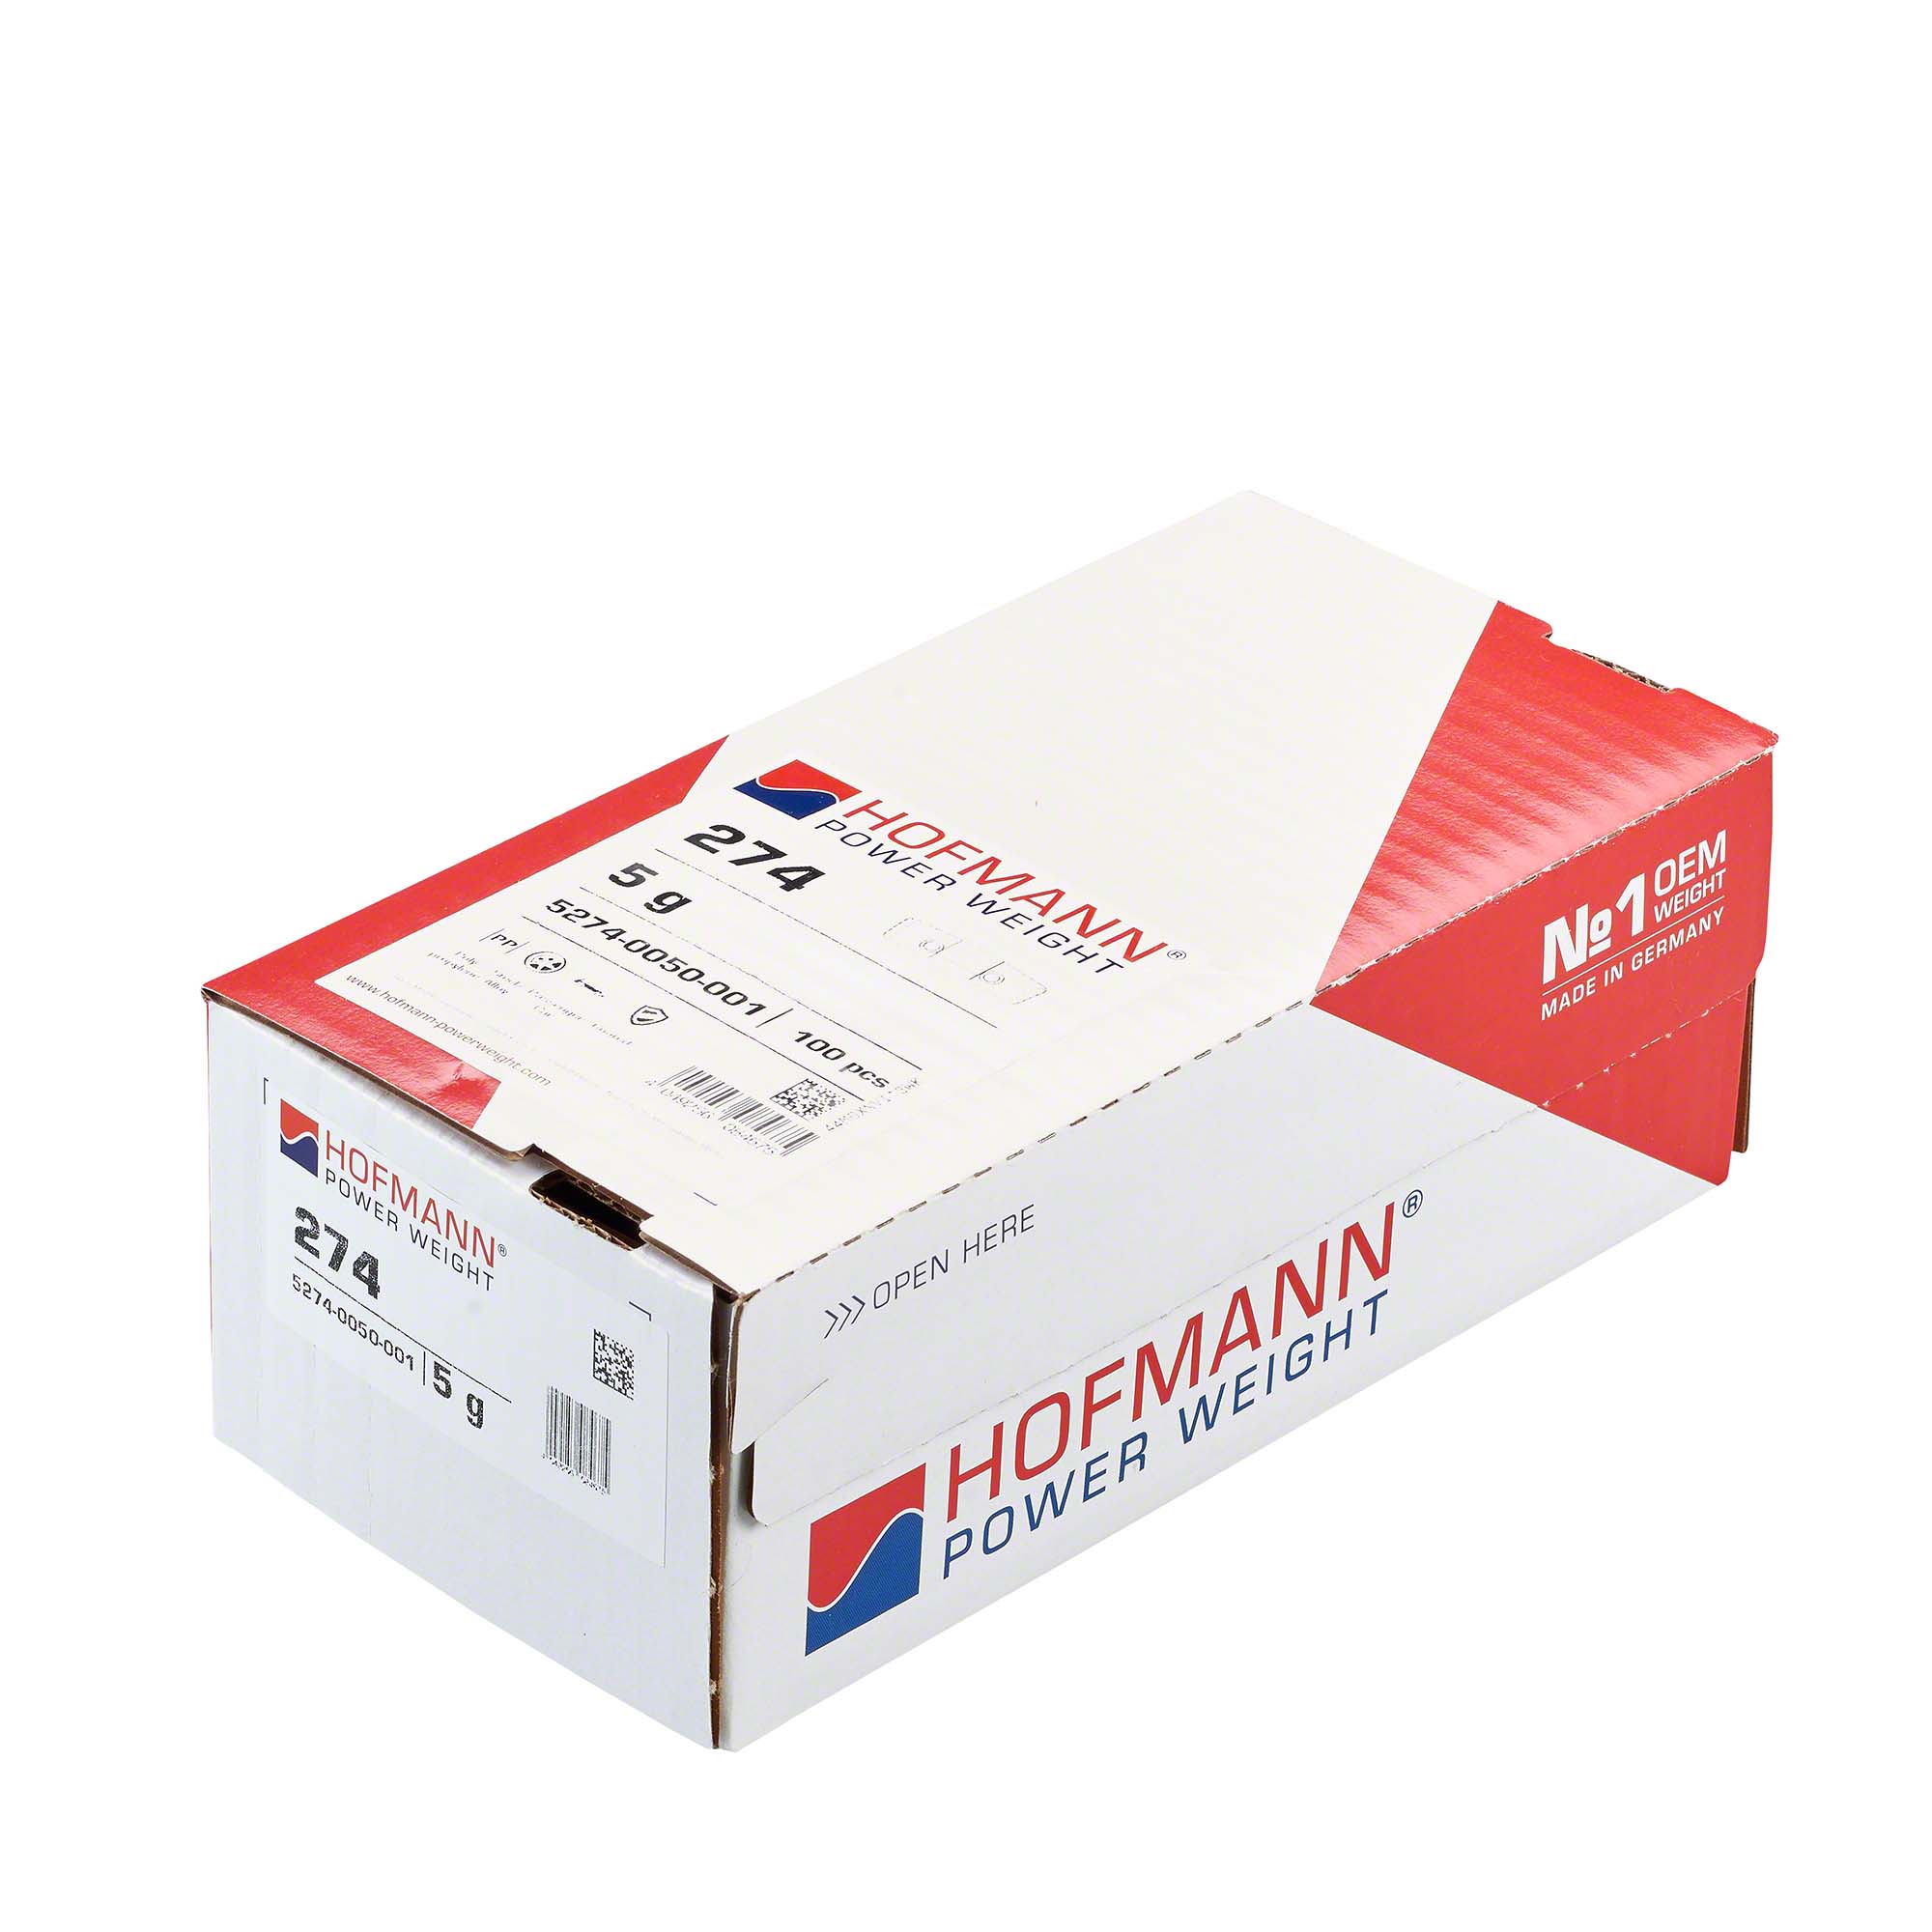 HOFMANN POWER WEIGHT-Sicherheitsgewicht - Typ 274, 5 g, Kunststoff, Silber-5274-0050-001